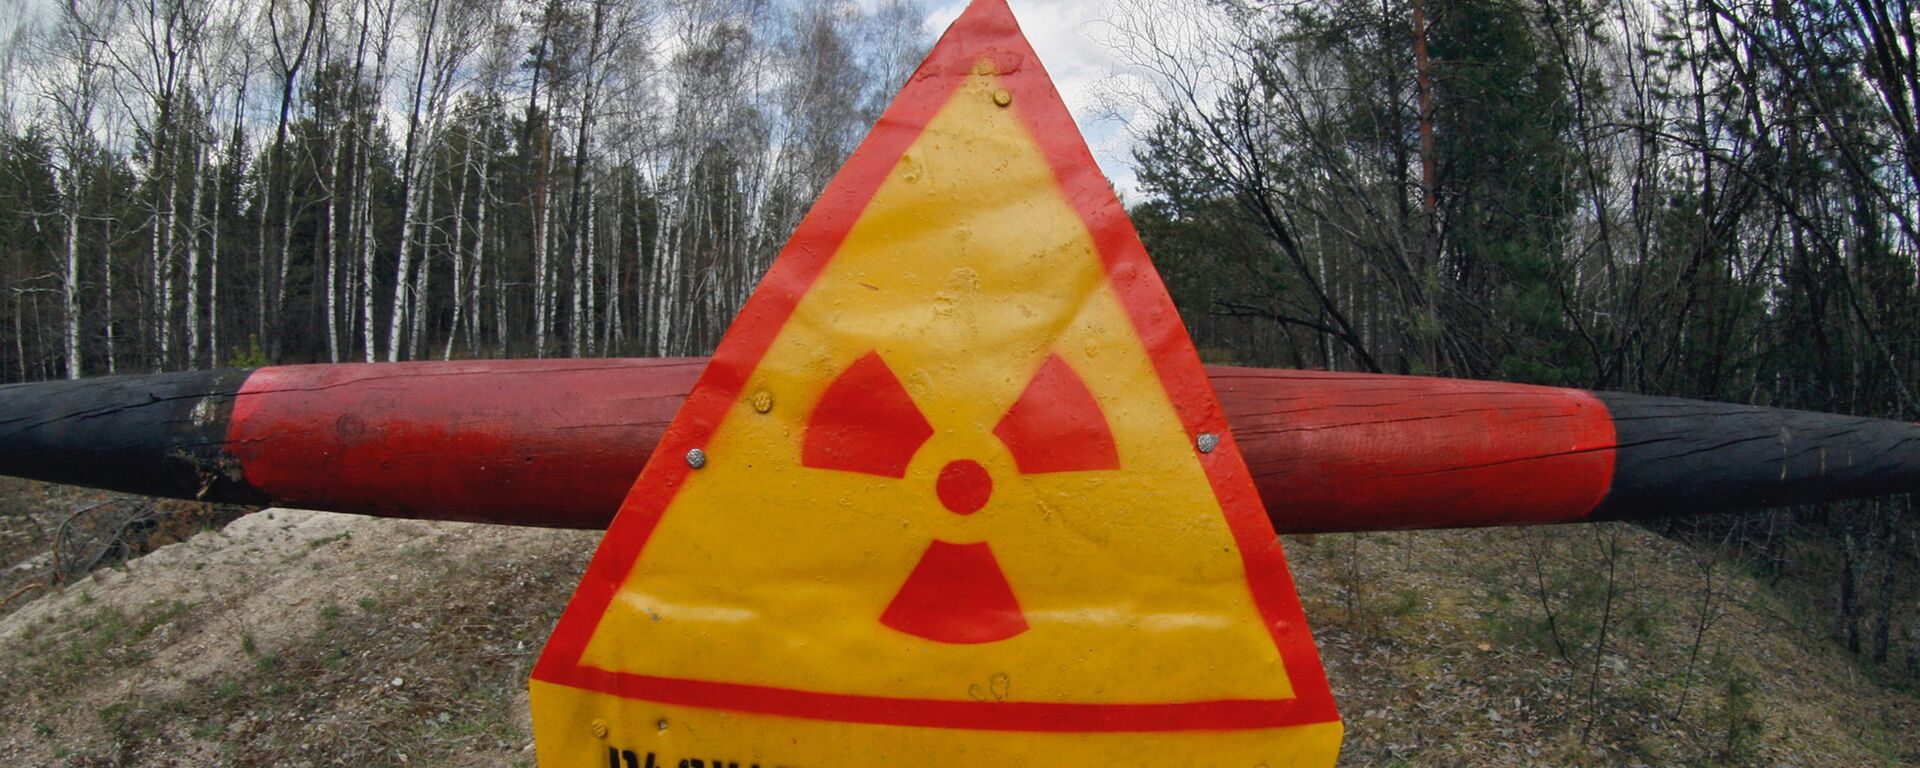 Chernobyl nuclear plant restricted zone - Sputnik International, 1920, 13.04.2022